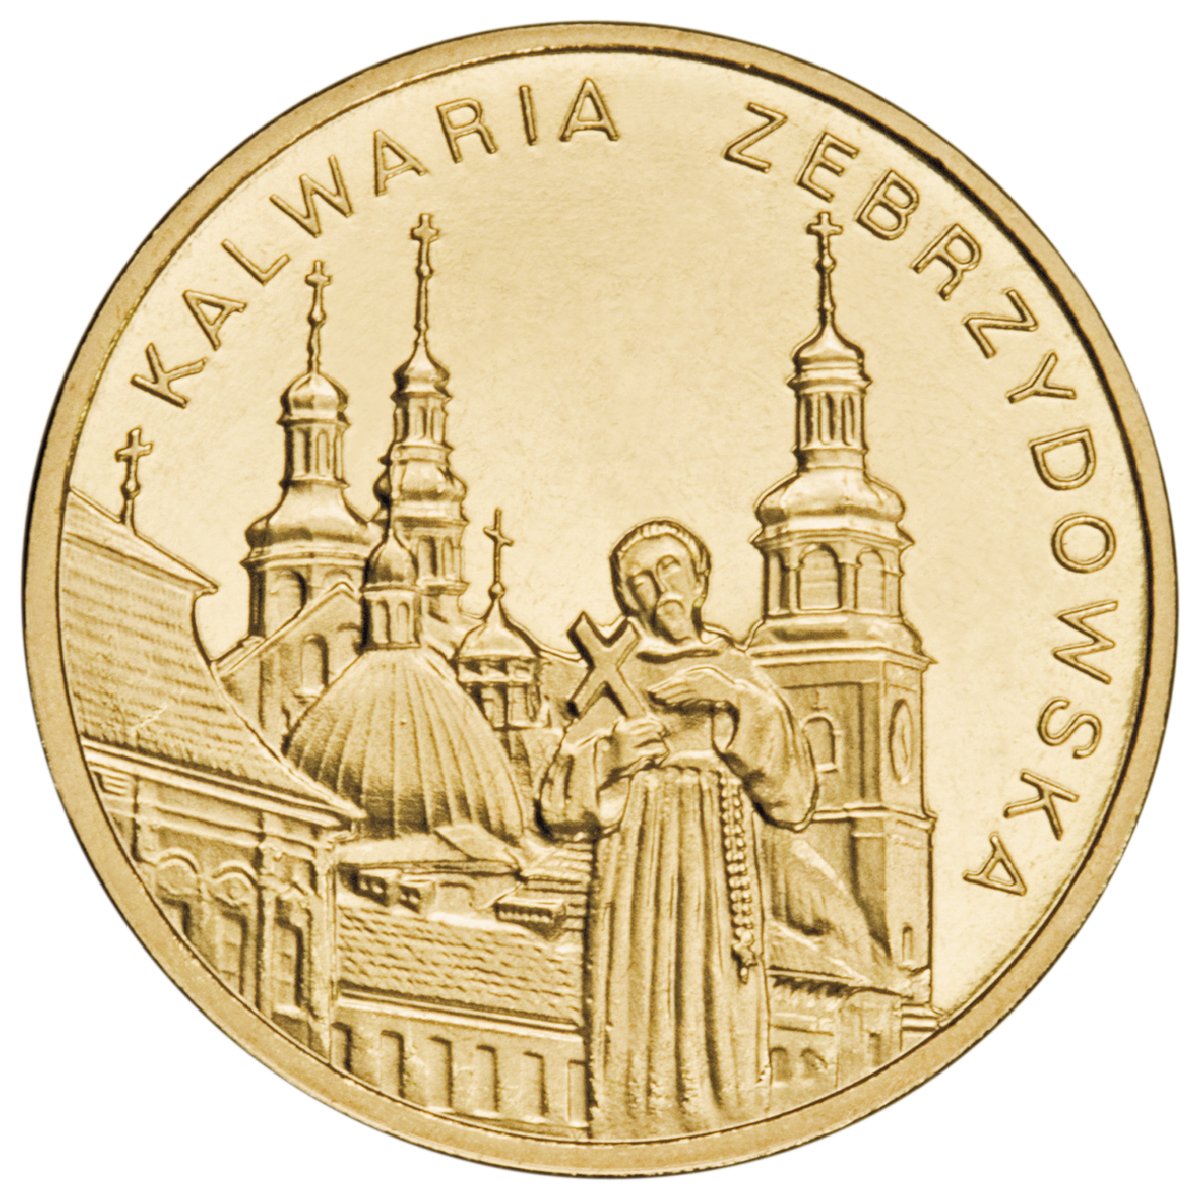 2zl-kalwaria-zebrzydowska-rewers-monety